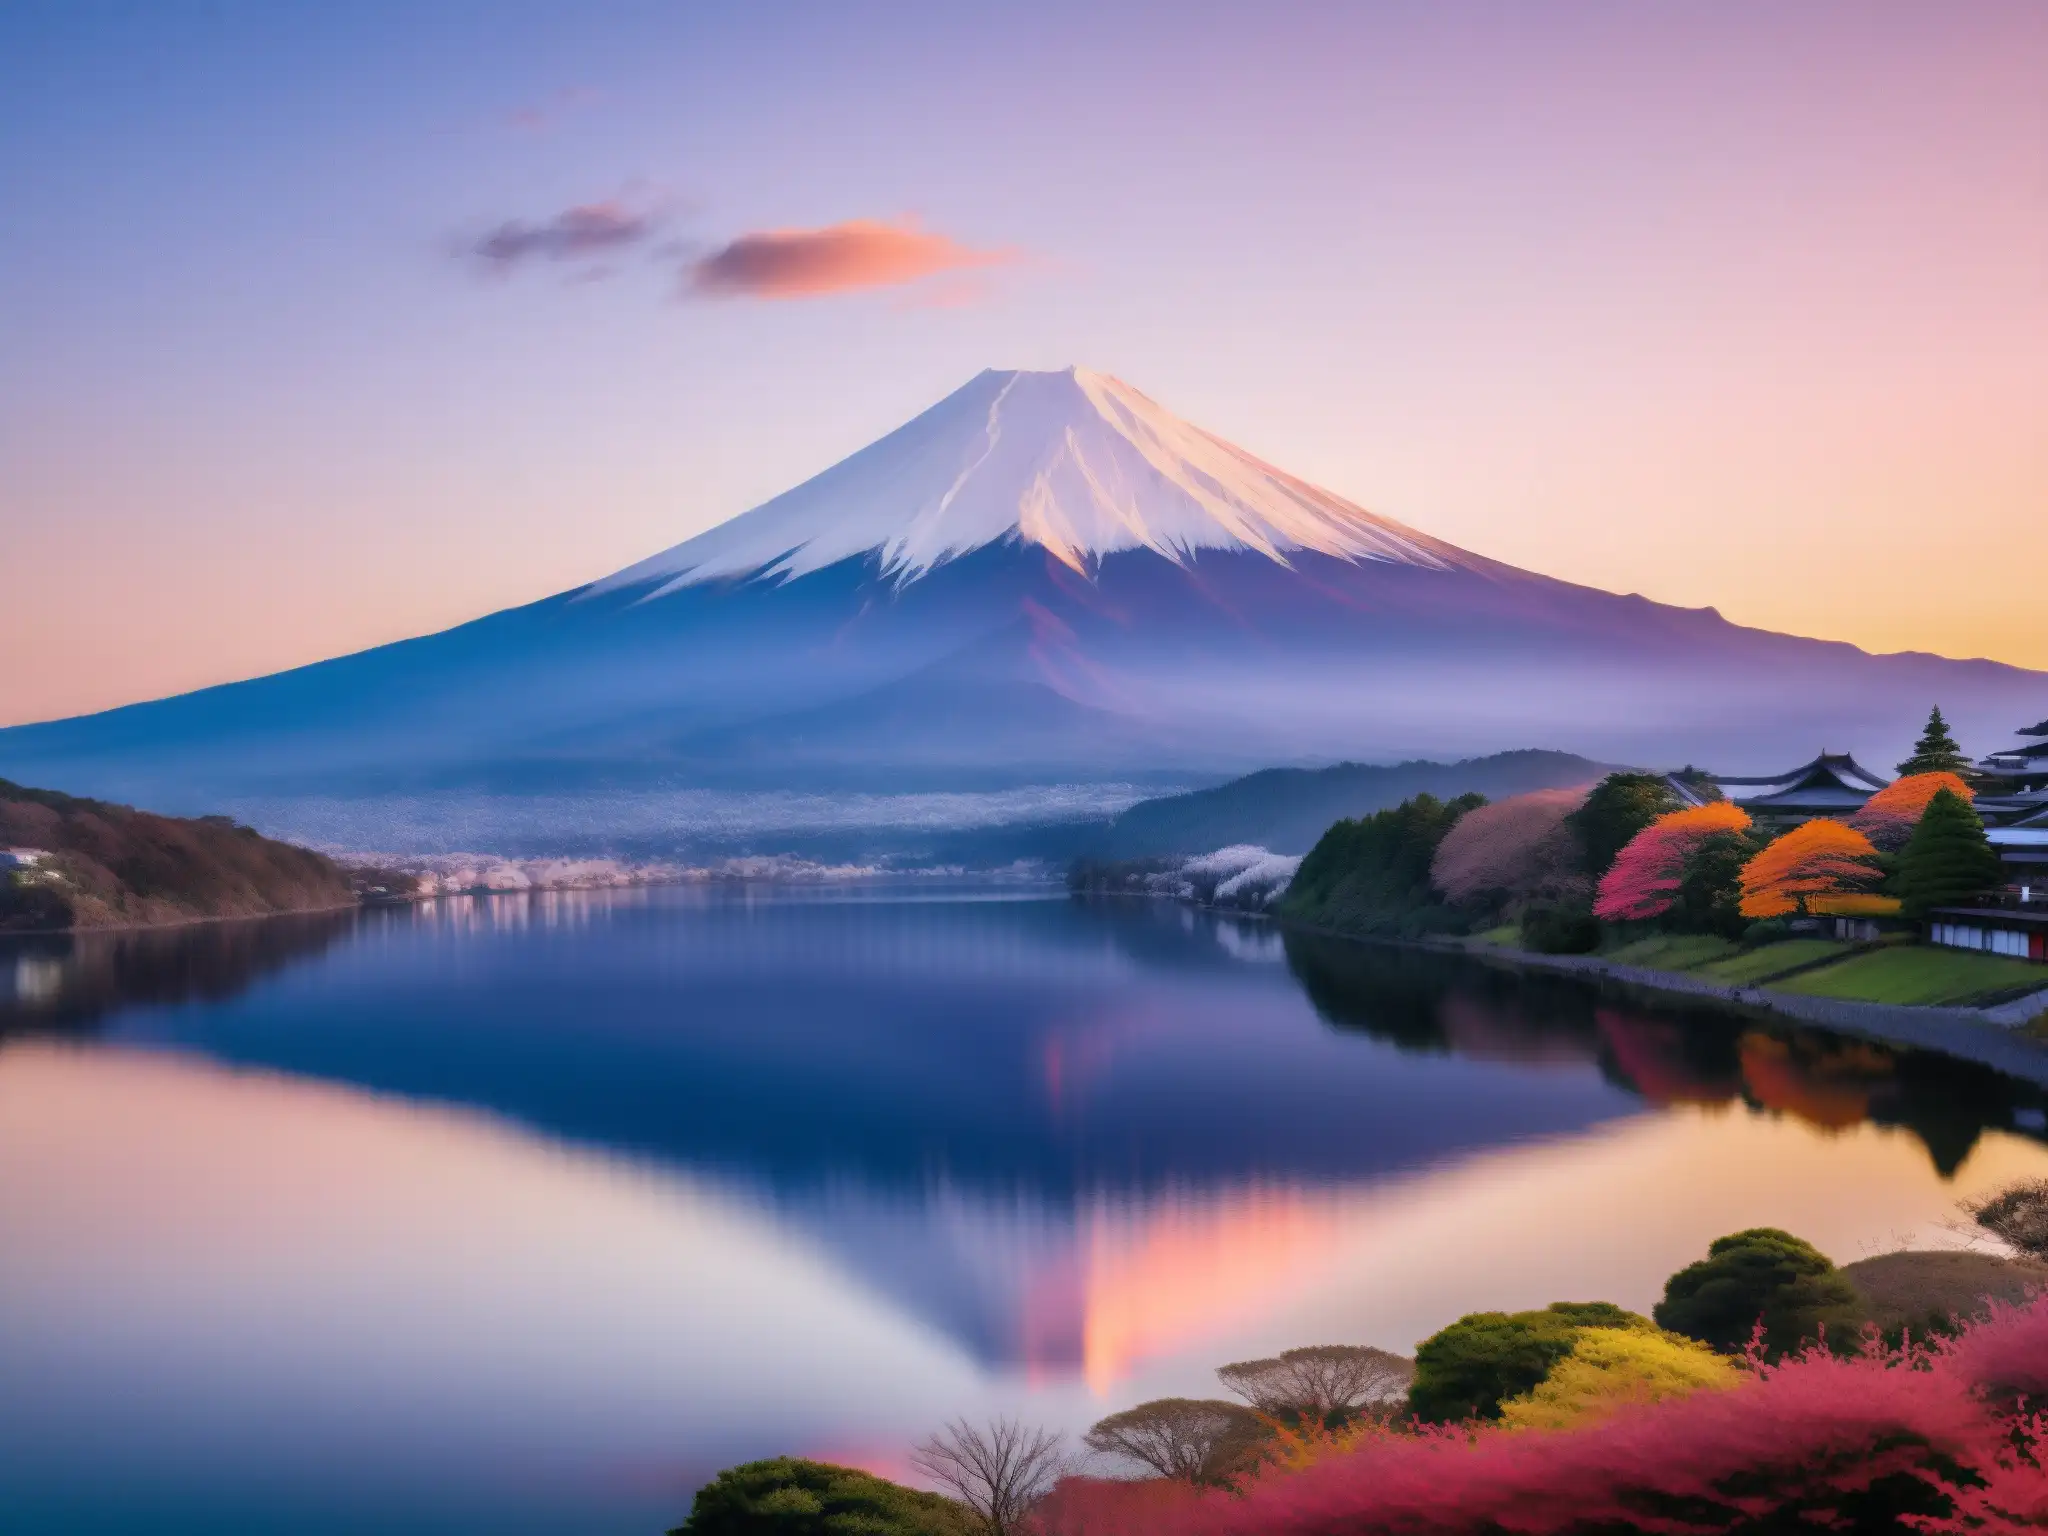 Vista majestuosa del Monte Fuji al atardecer, reflejándose en un lago tranquilo